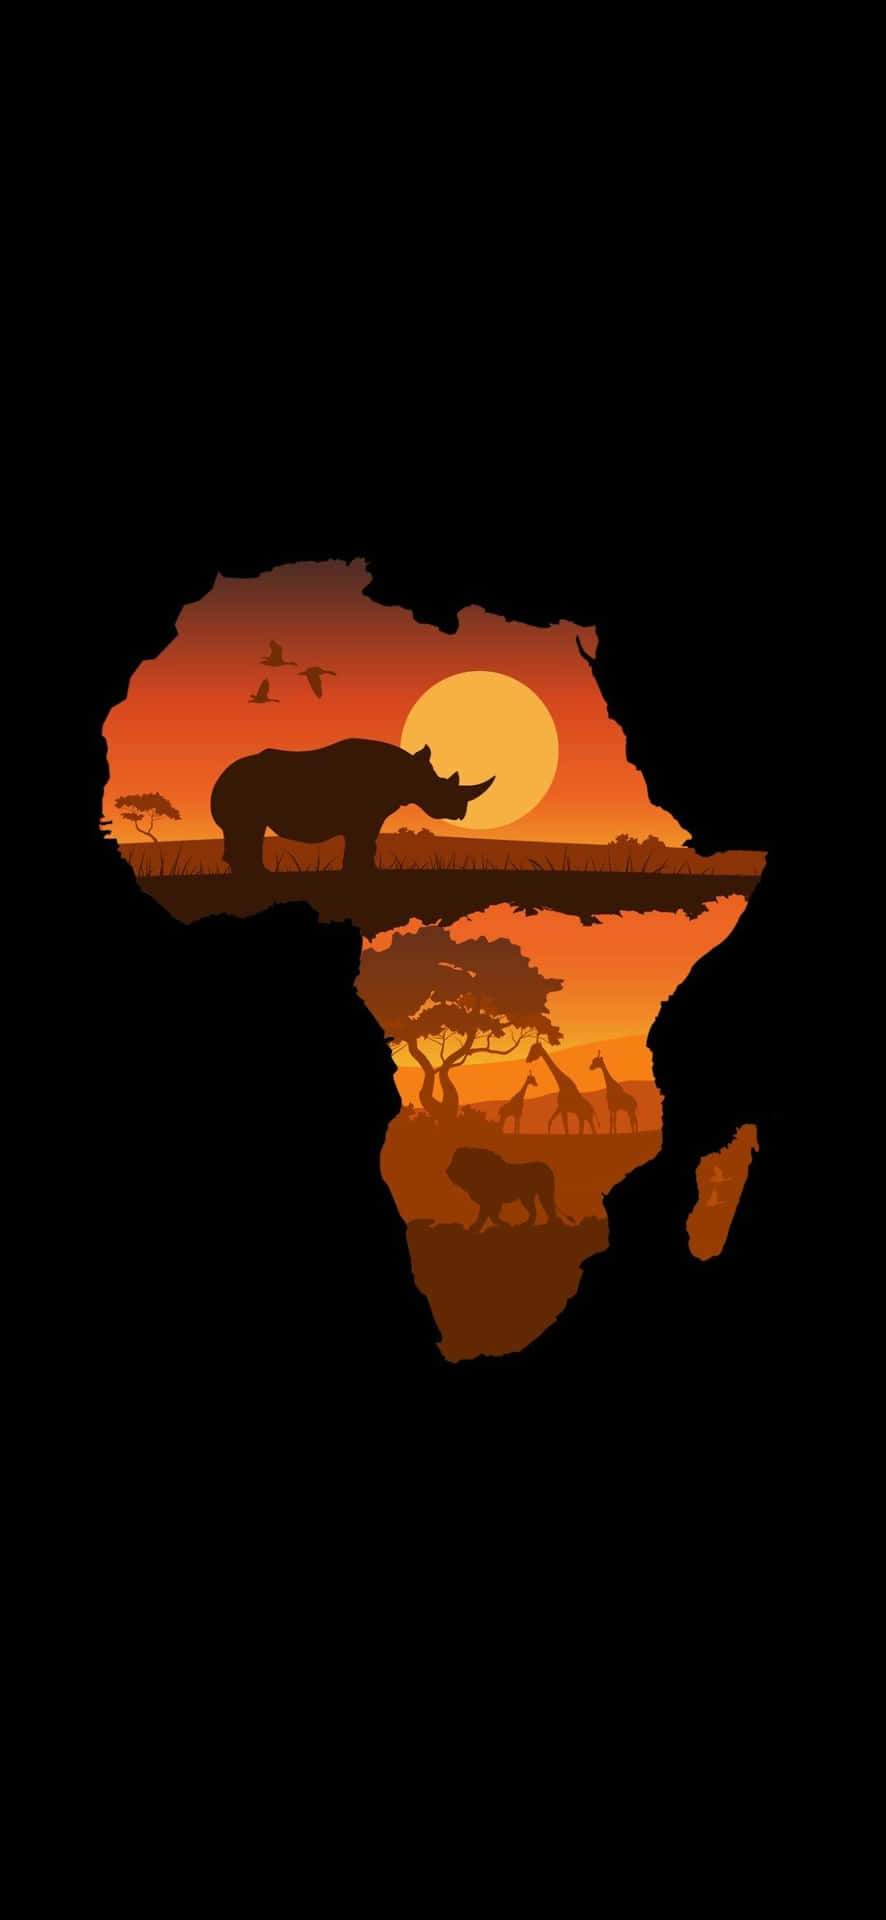 Afrikanskasavanndjur På Karttelefonen. Wallpaper